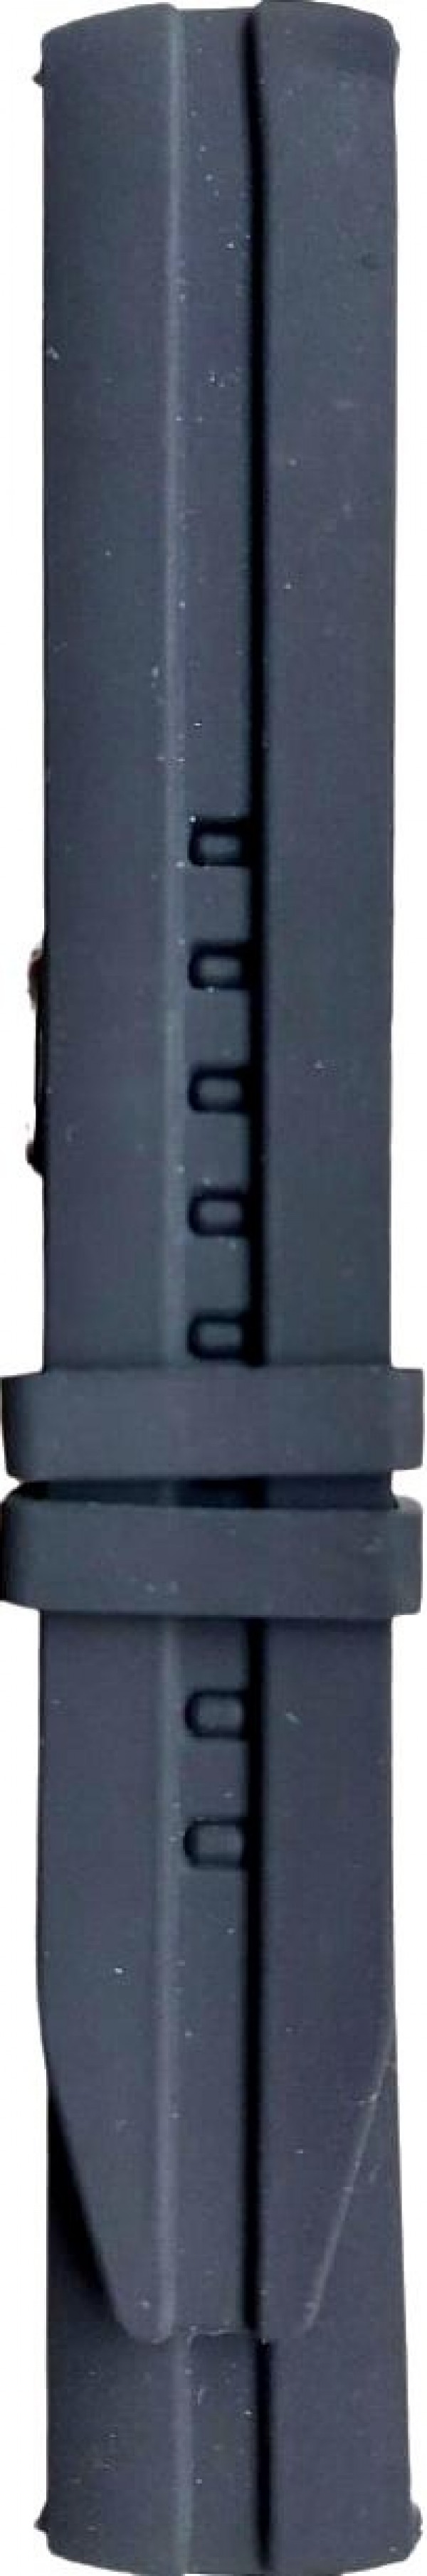 Silikonski kaiš - SK 30.04 Crna boja 30mm